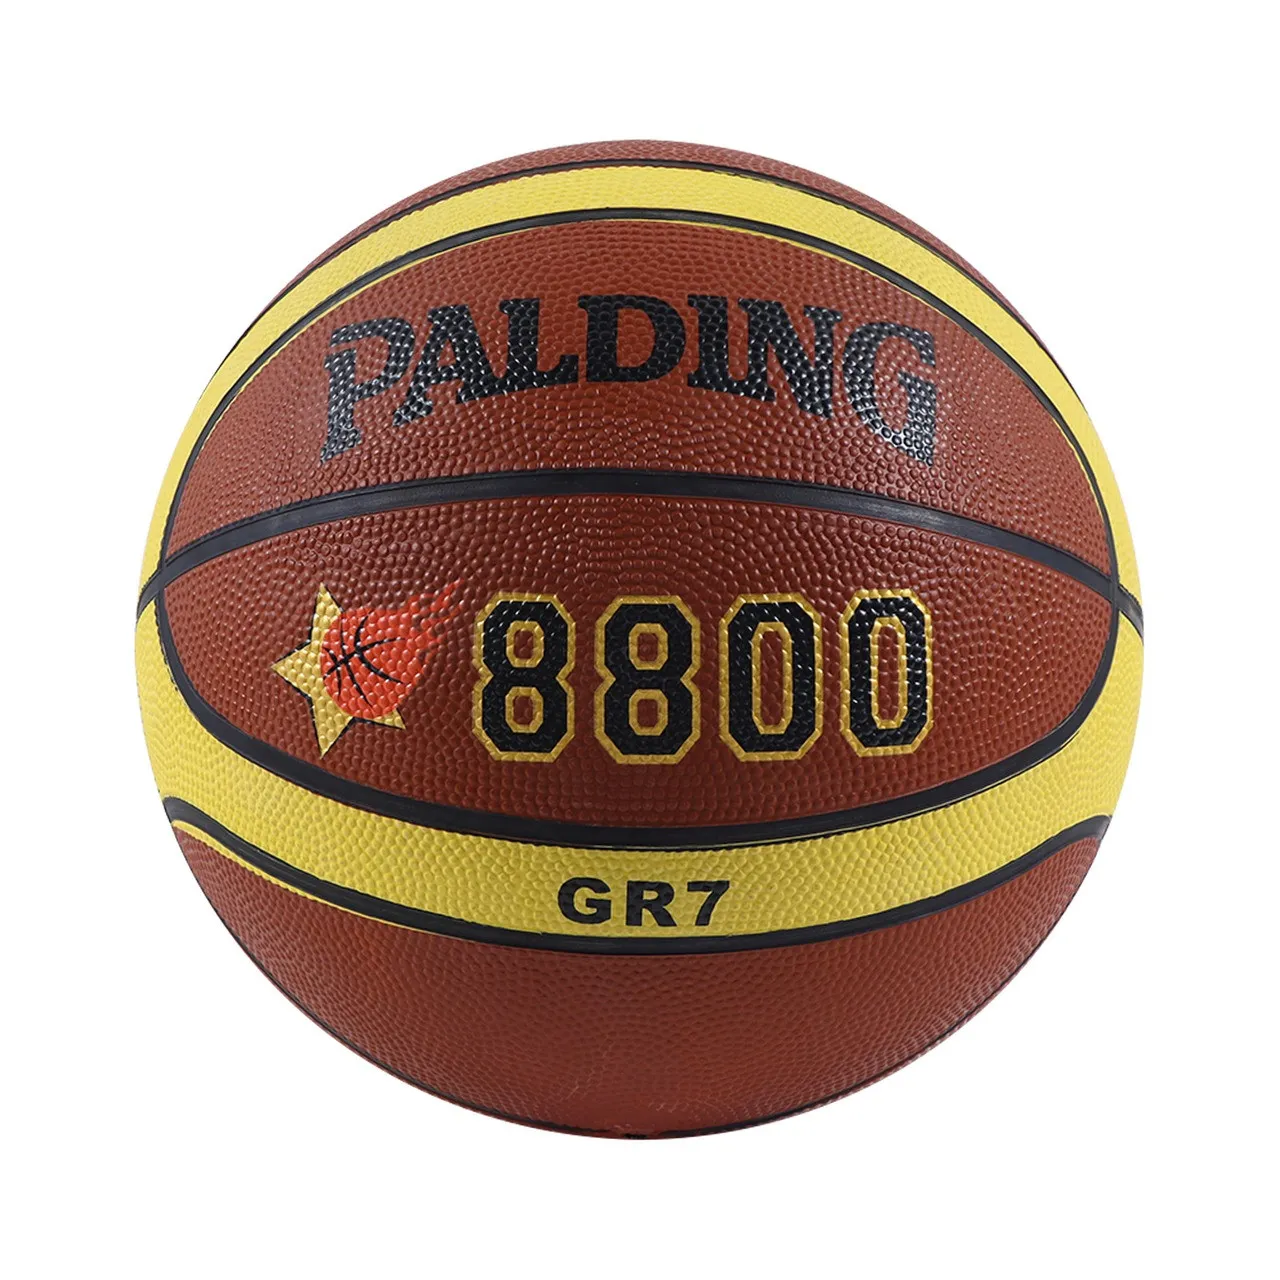 Баскетбольный мяч Palding 8800#1